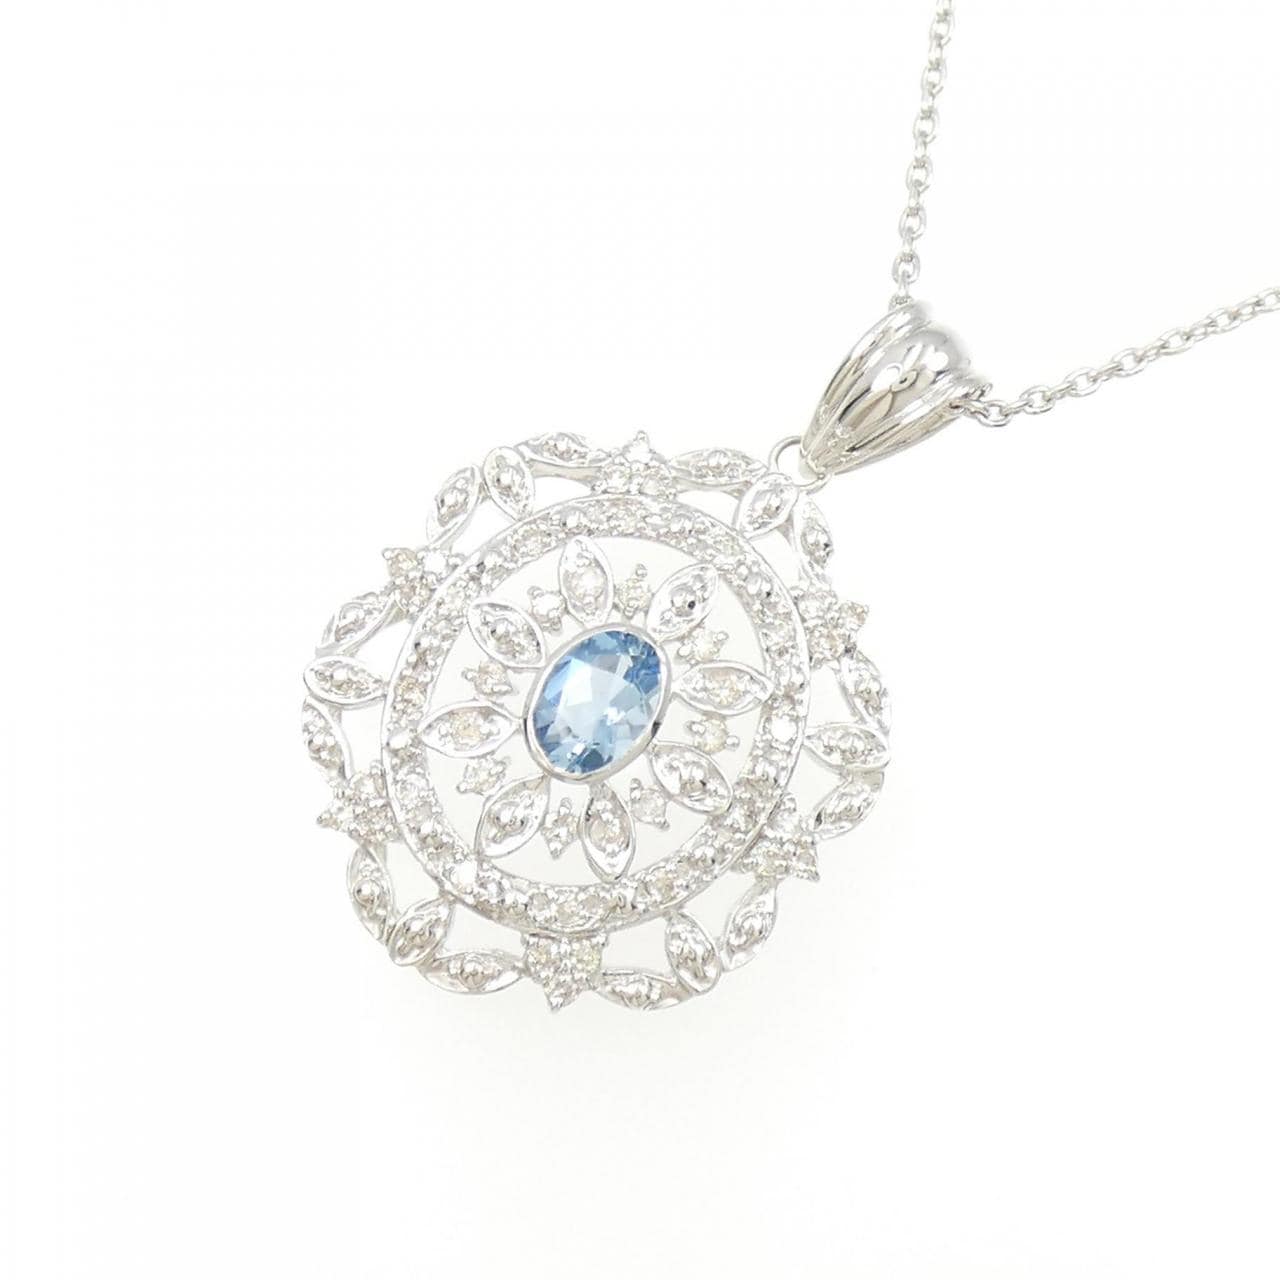 K18WG Aquamarine necklace 0.54CT